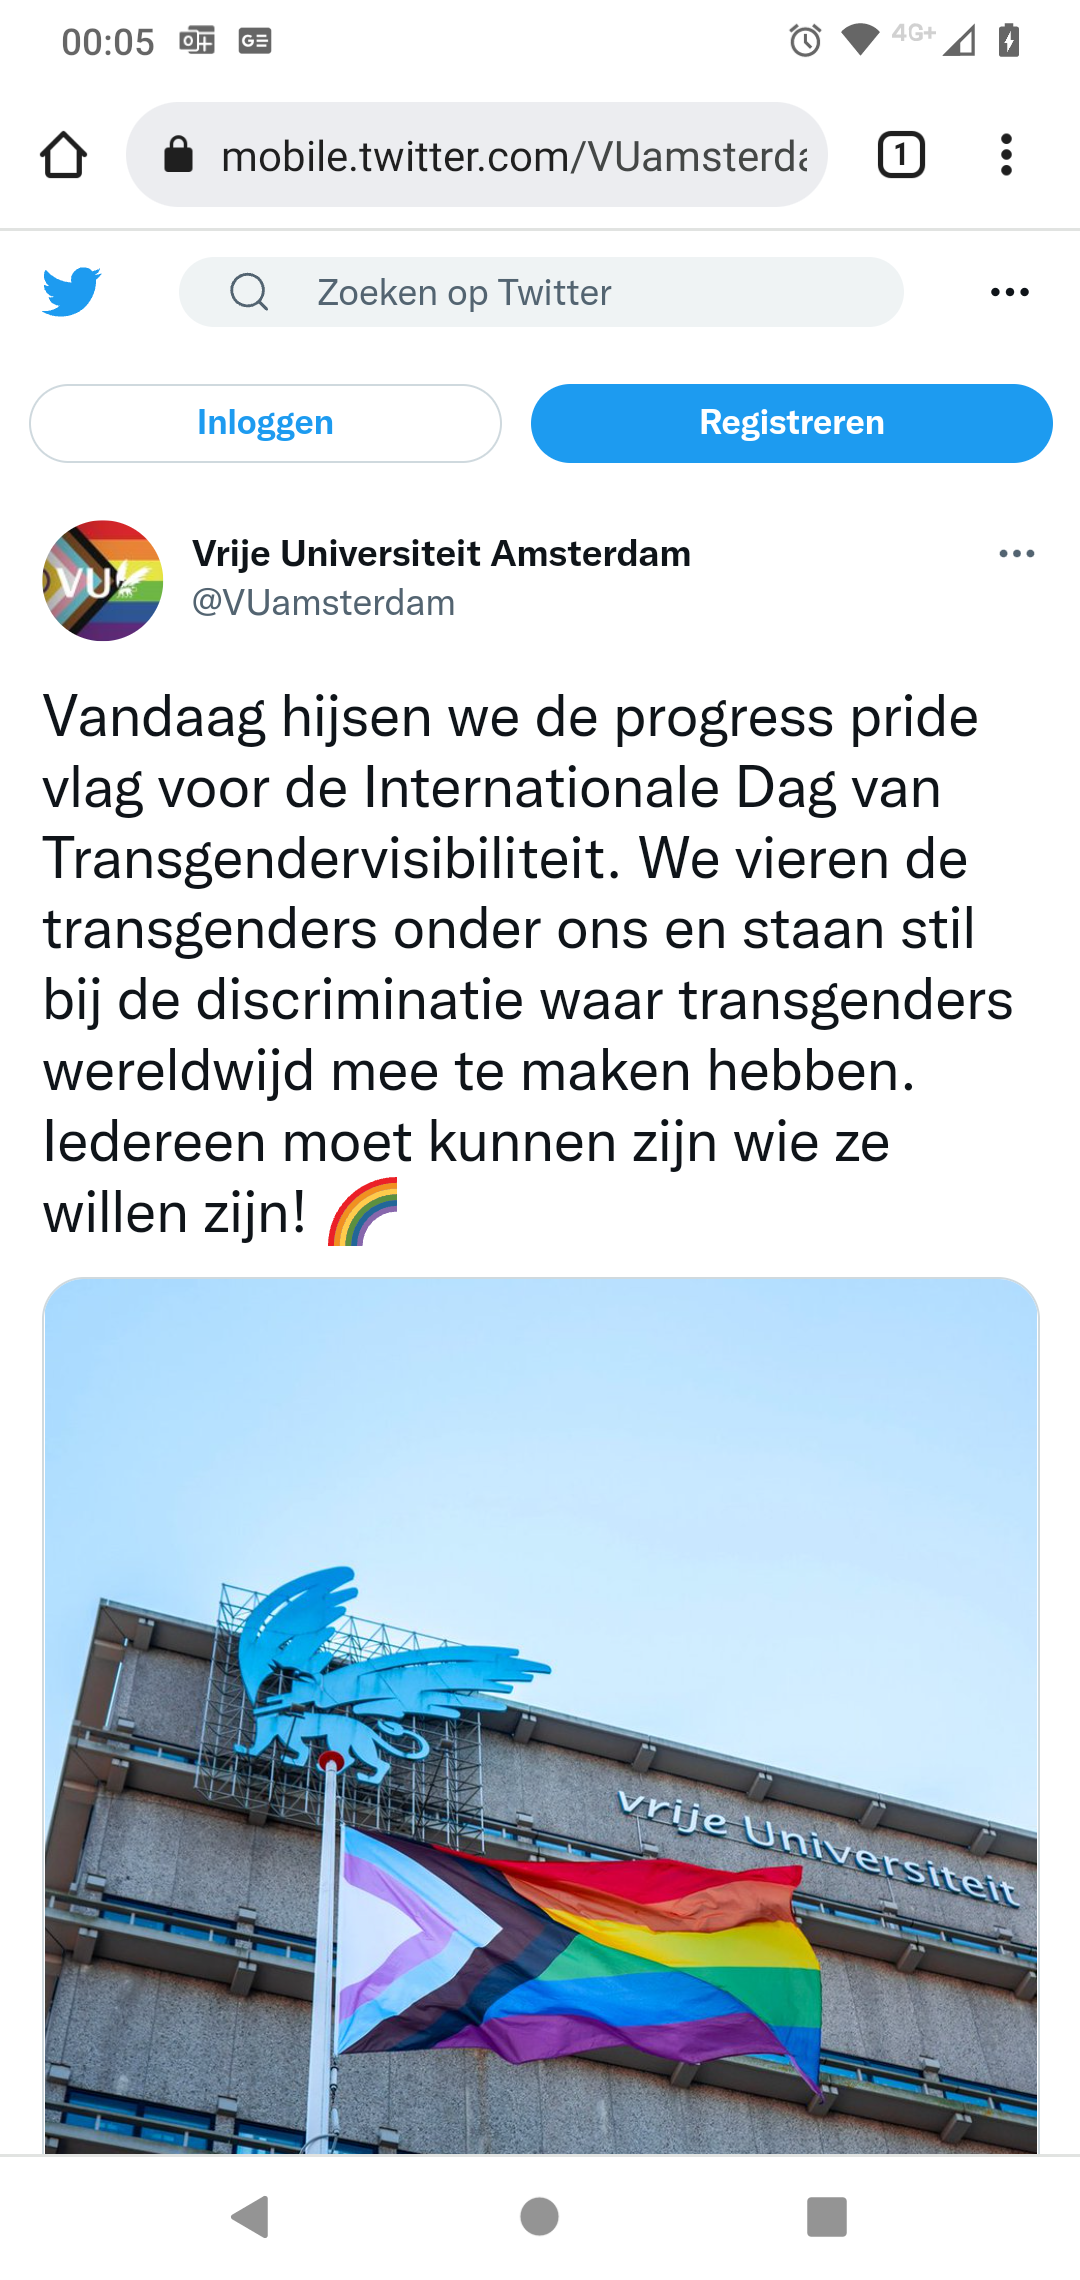 VU_met_pride_vlag